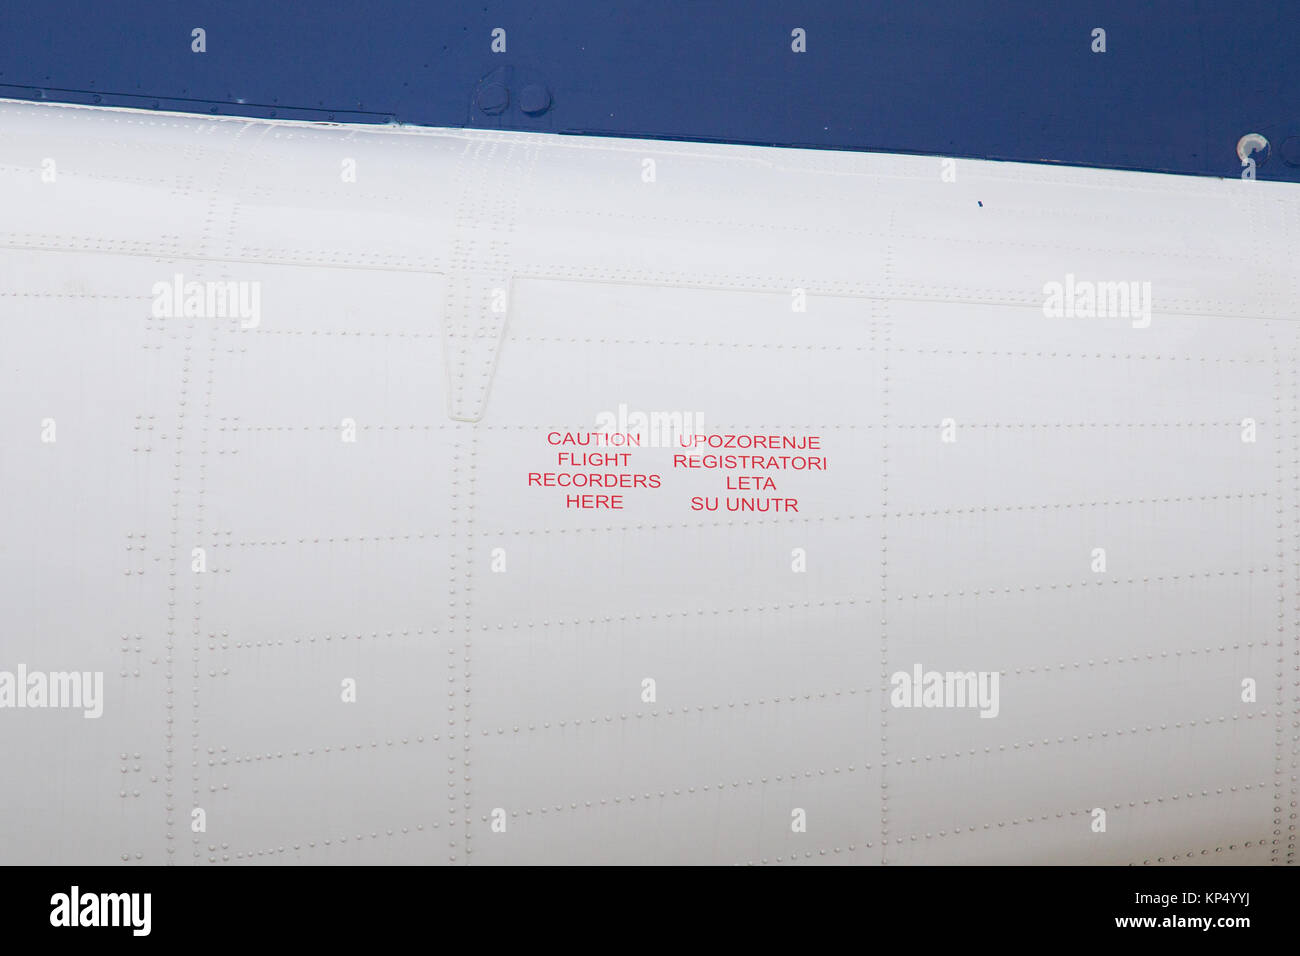 Precaución los registradores de vuelo aquí escrito en inglés y en idioma serbio en el fuselaje del avión ATR 72 Serbia aire Foto de stock